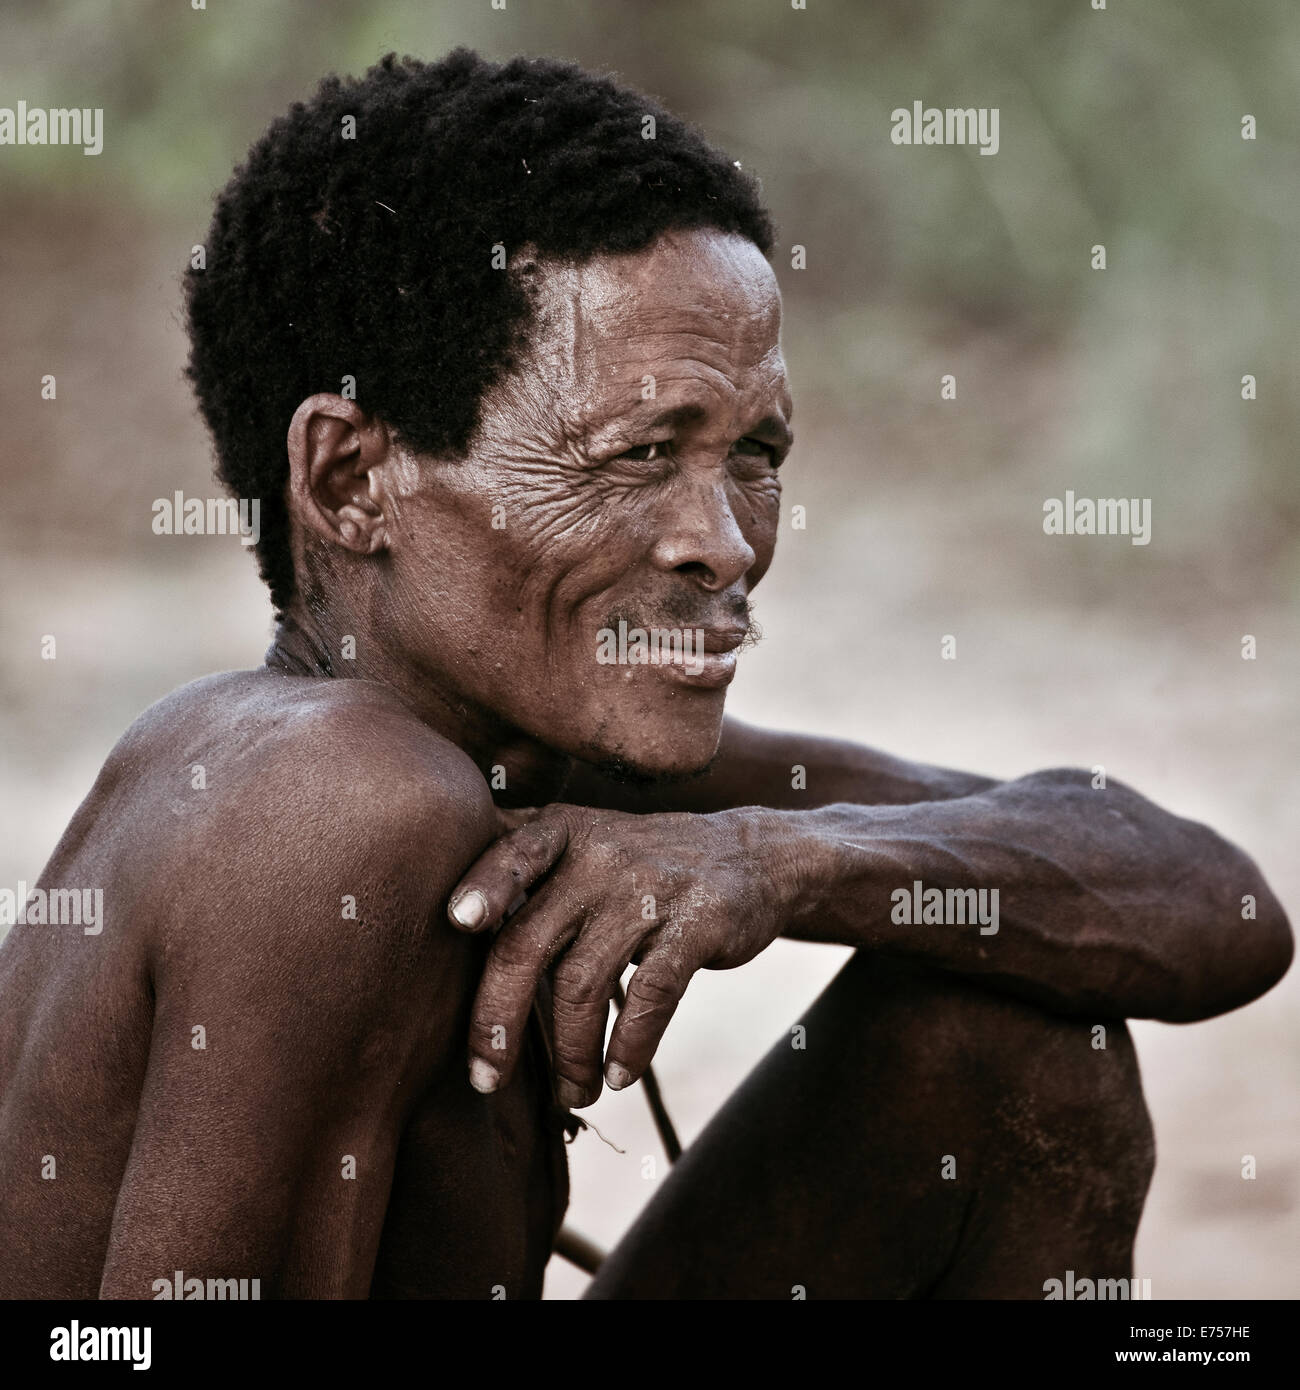 African Kalahari tribesman Stock Photo